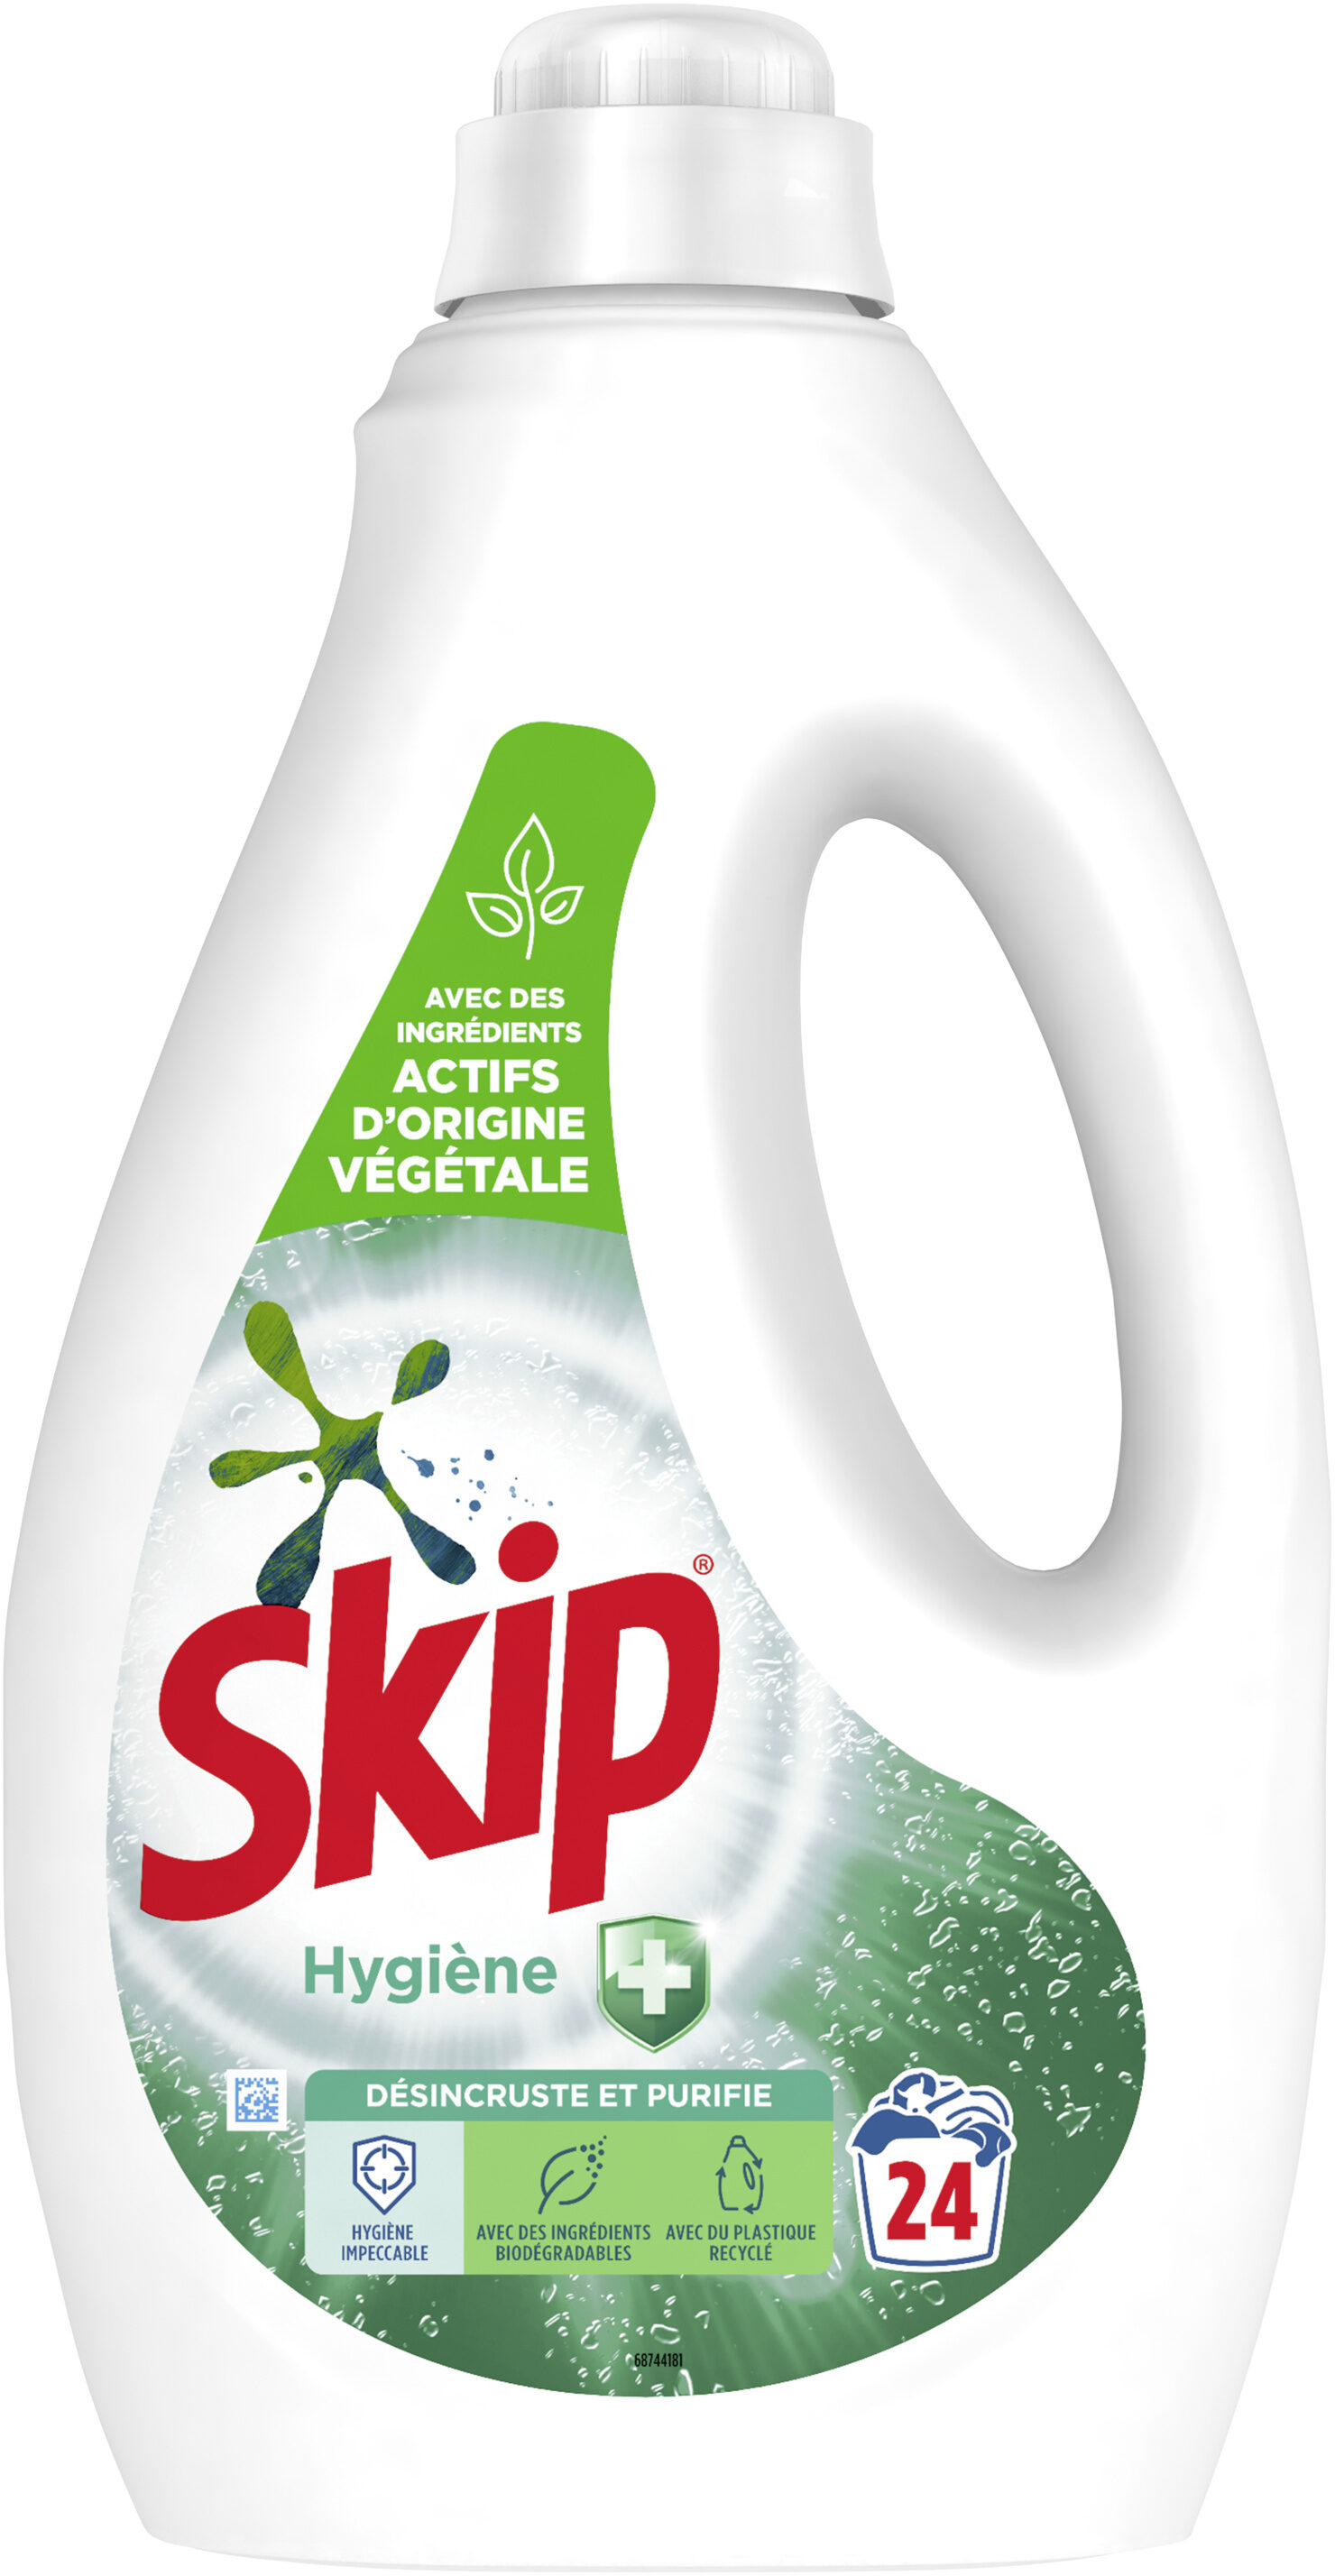 Skip Lessive Liquide Hygiène 1,2l - 24 Lavages - Product - fr